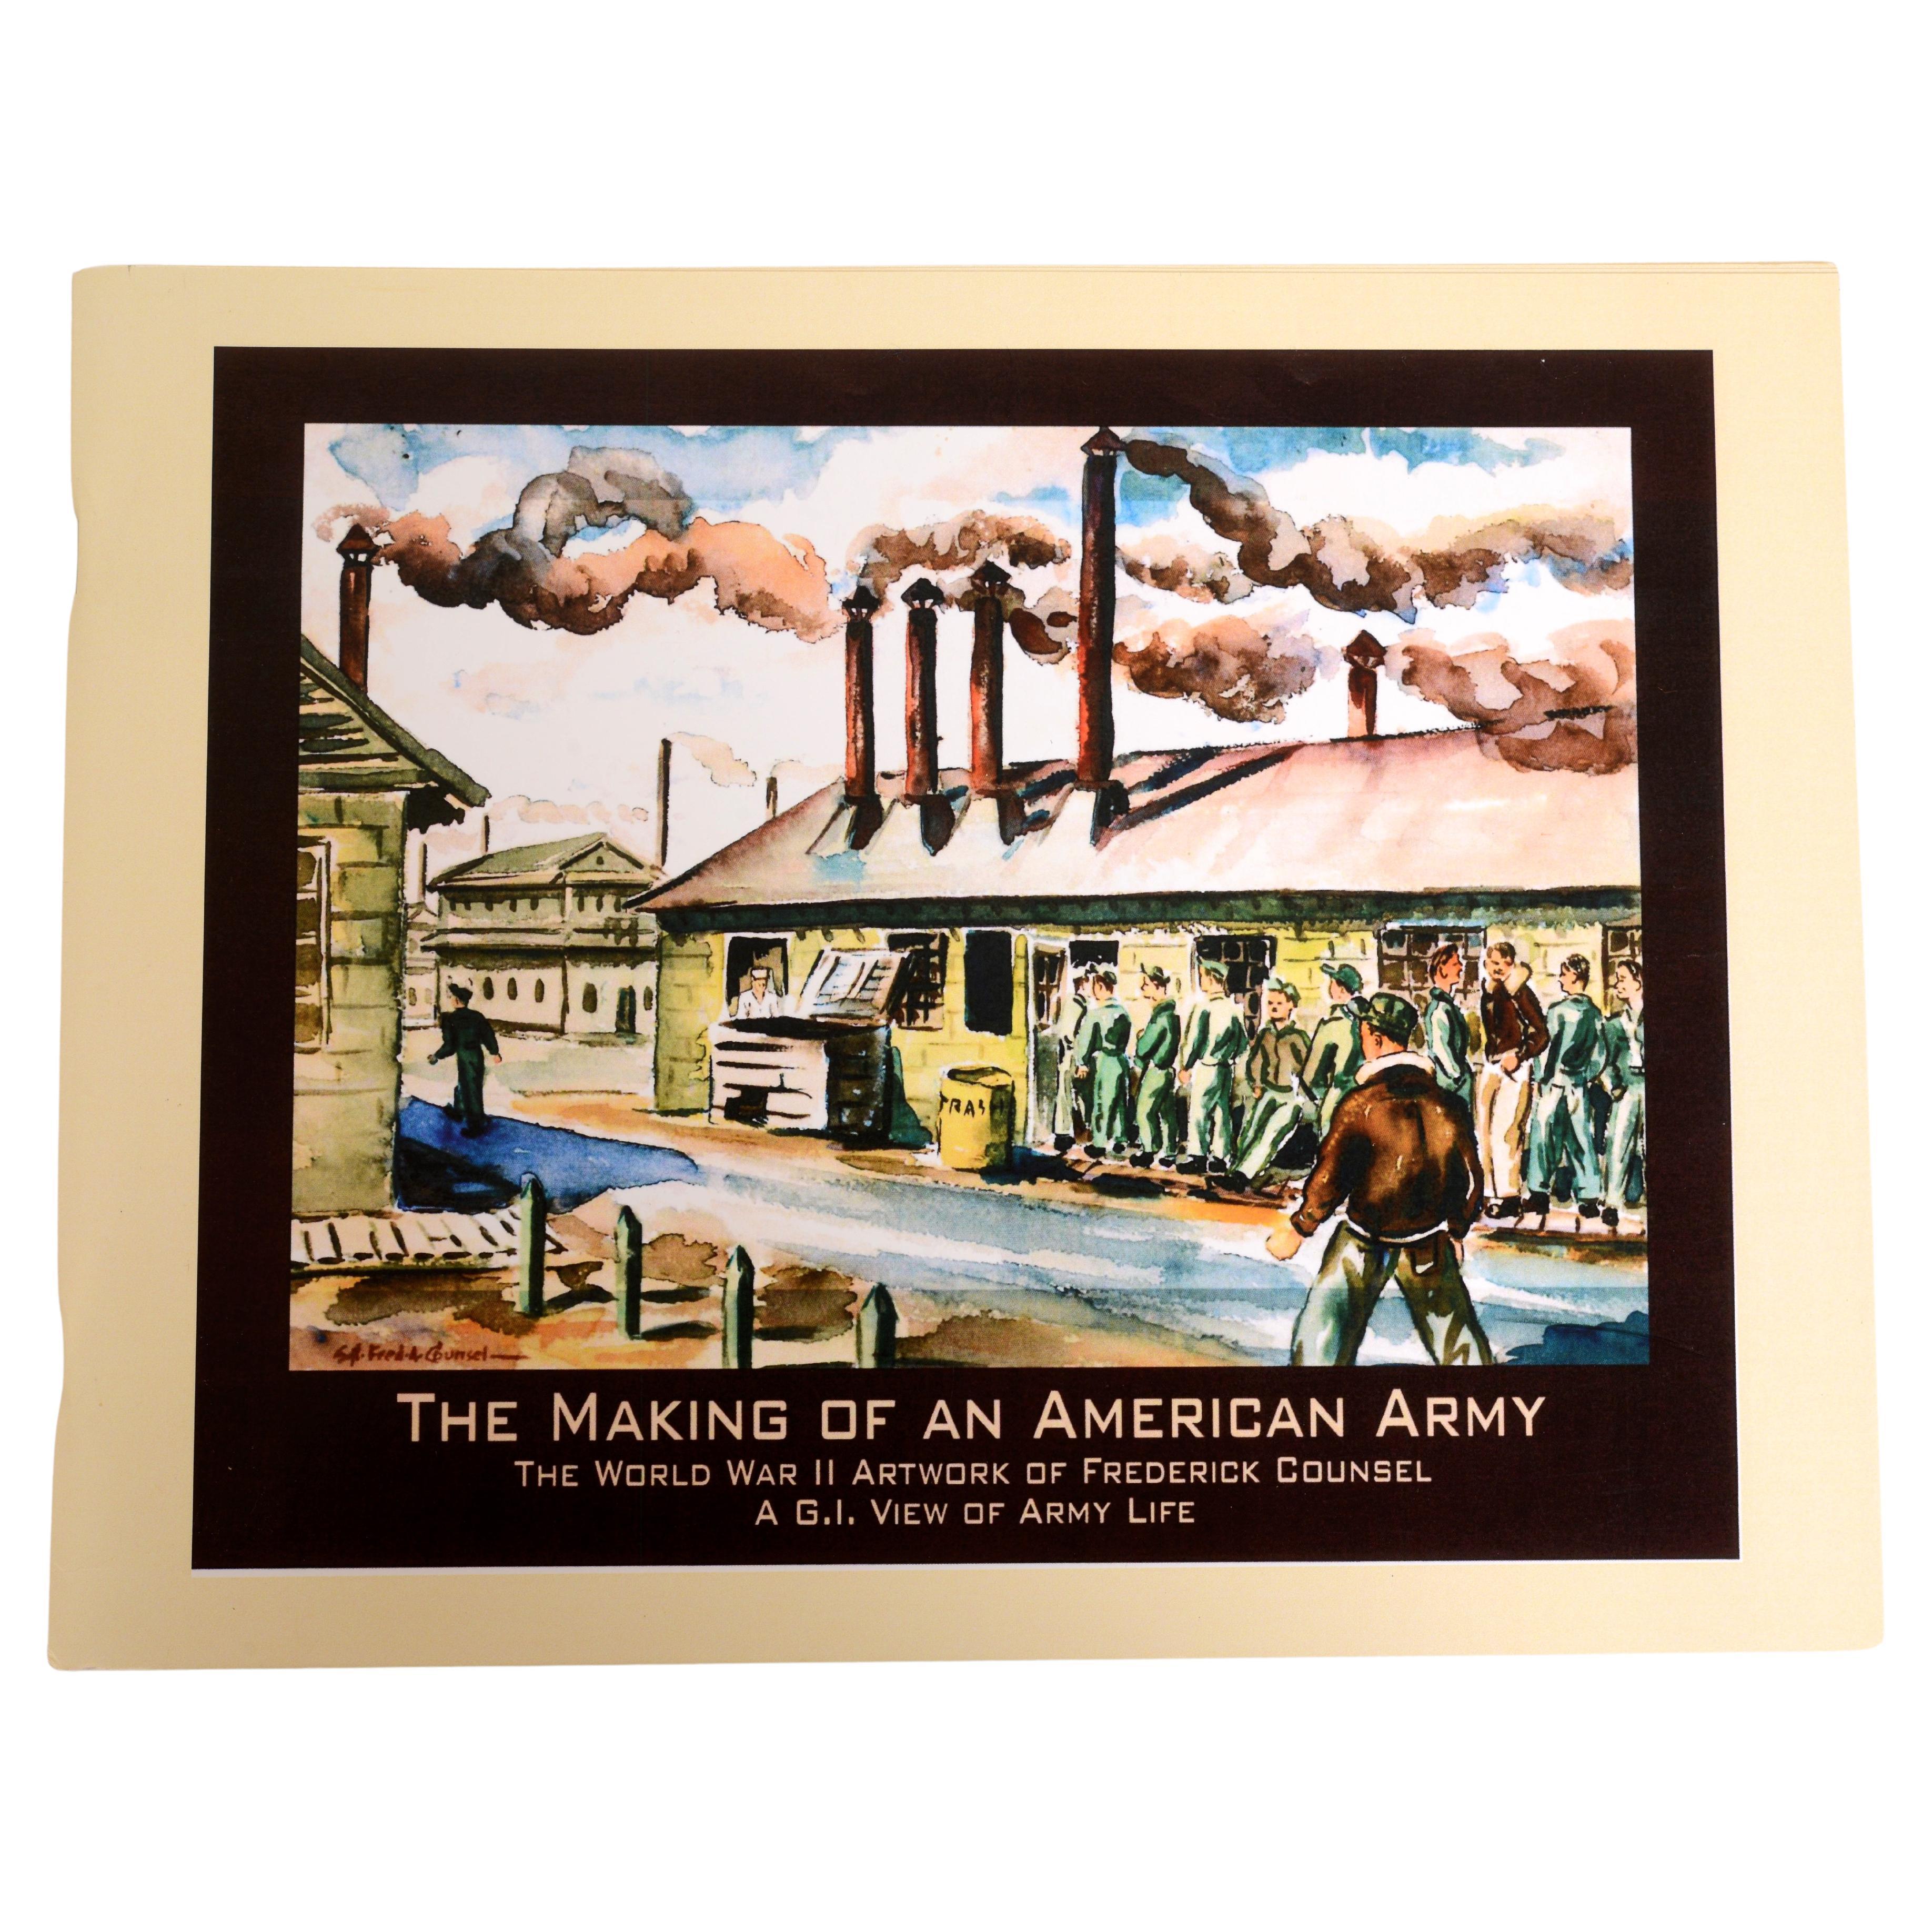 Making of an American Army: Das Kunstwerk von Frederick Counsel aus dem Zweiten Weltkrieg 